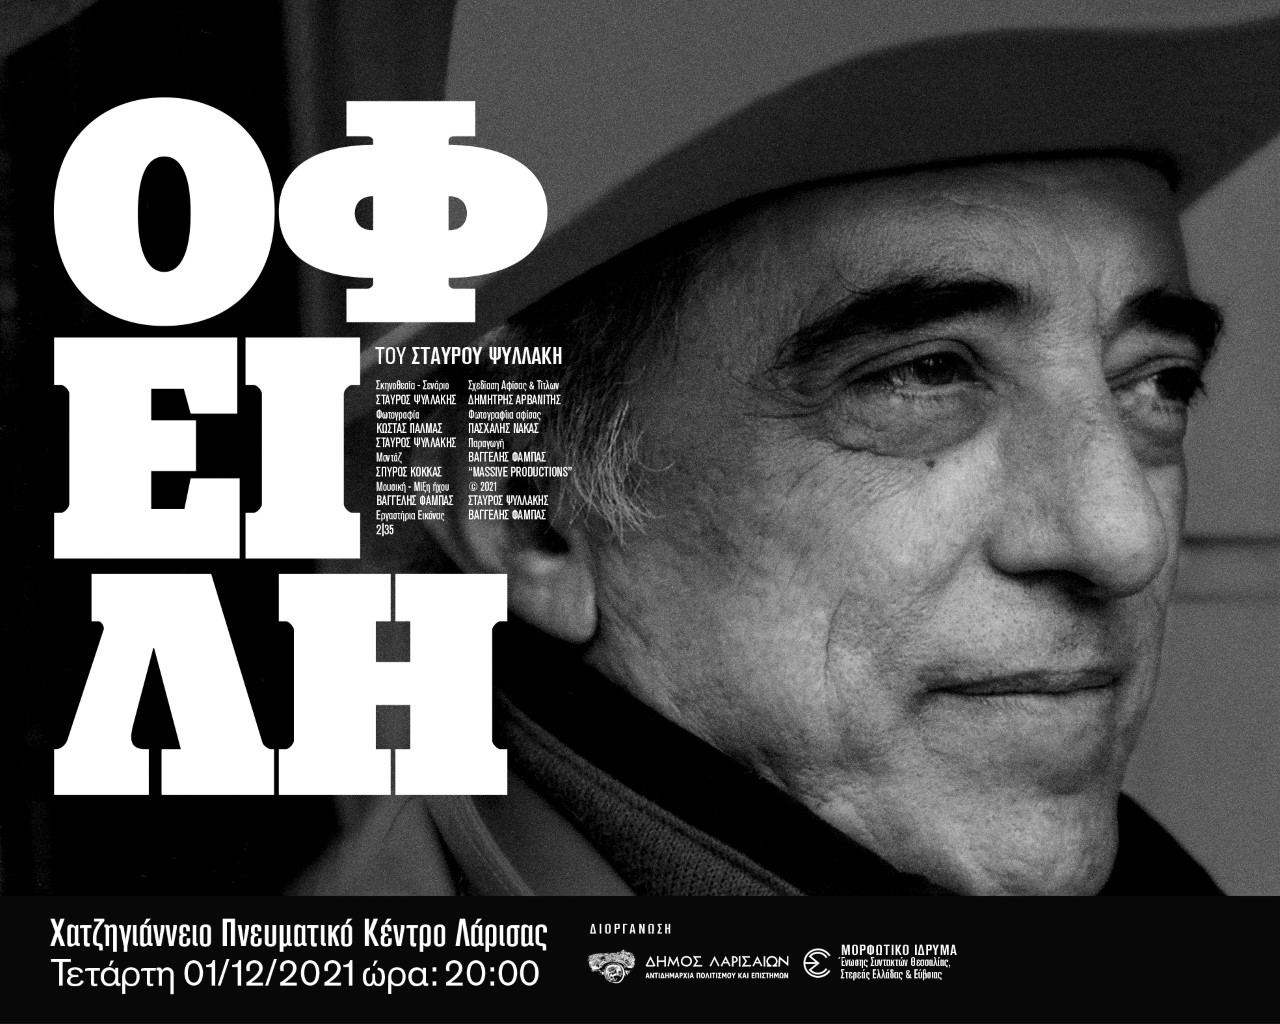 Λάρισα: Εκδήλωση μνήμης για τον Αλέκο Ζούκα στο Χατζηγιάννειο - Προβολή του ντοκιμαντέρ “Οφειλή”